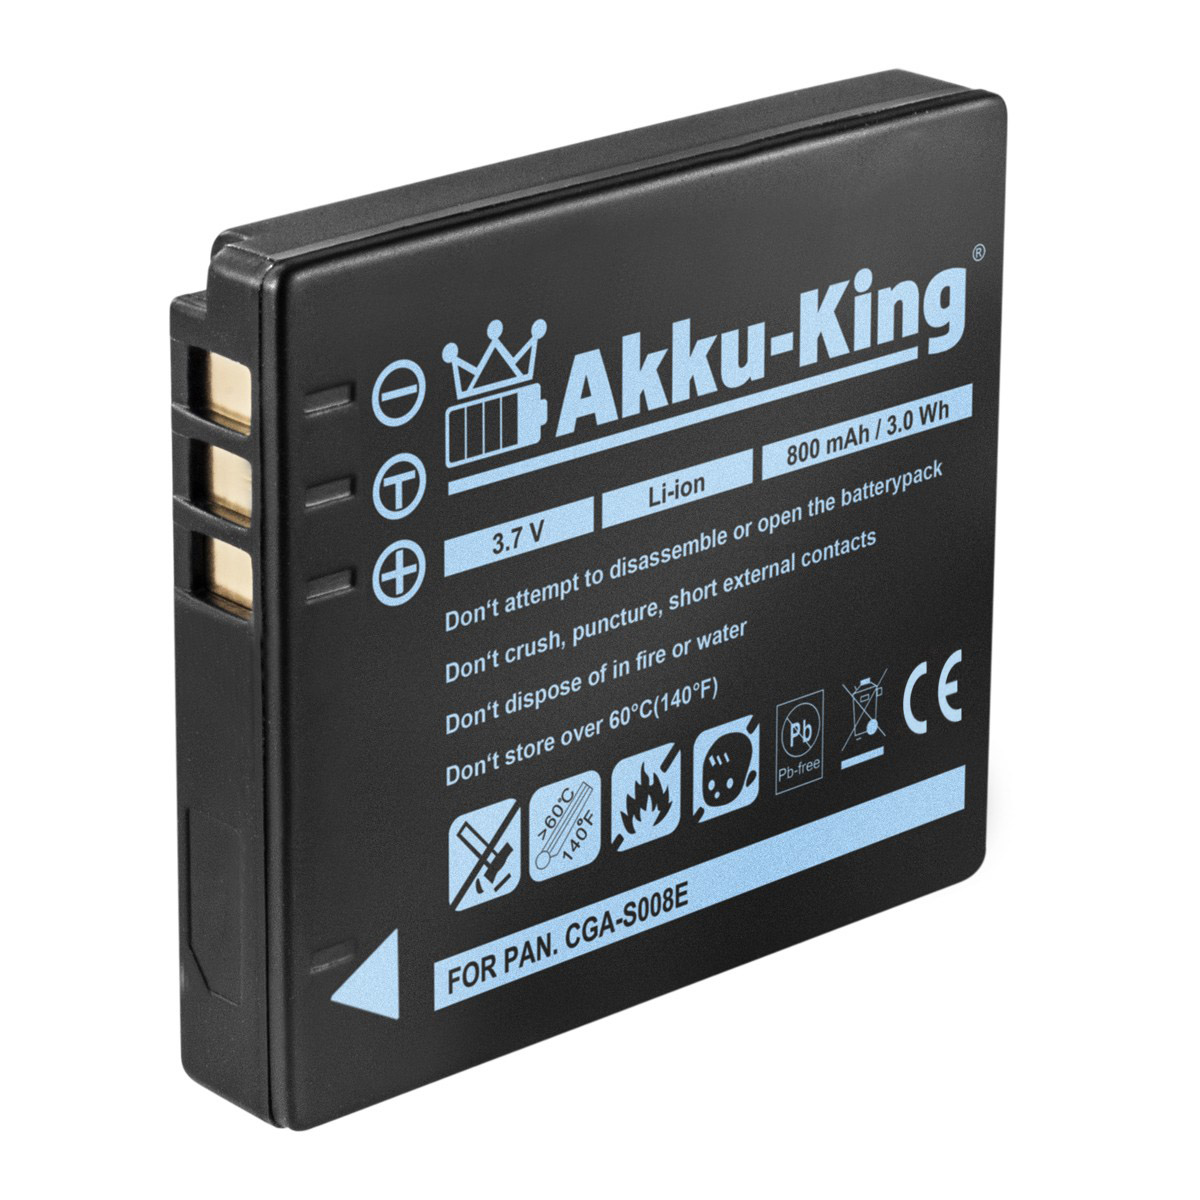 AKKU-KING Li-Ion CGA-S008E Akku kompatibel 800mAh Panasonic 3.7 Kamera-Akku, Volt, mit